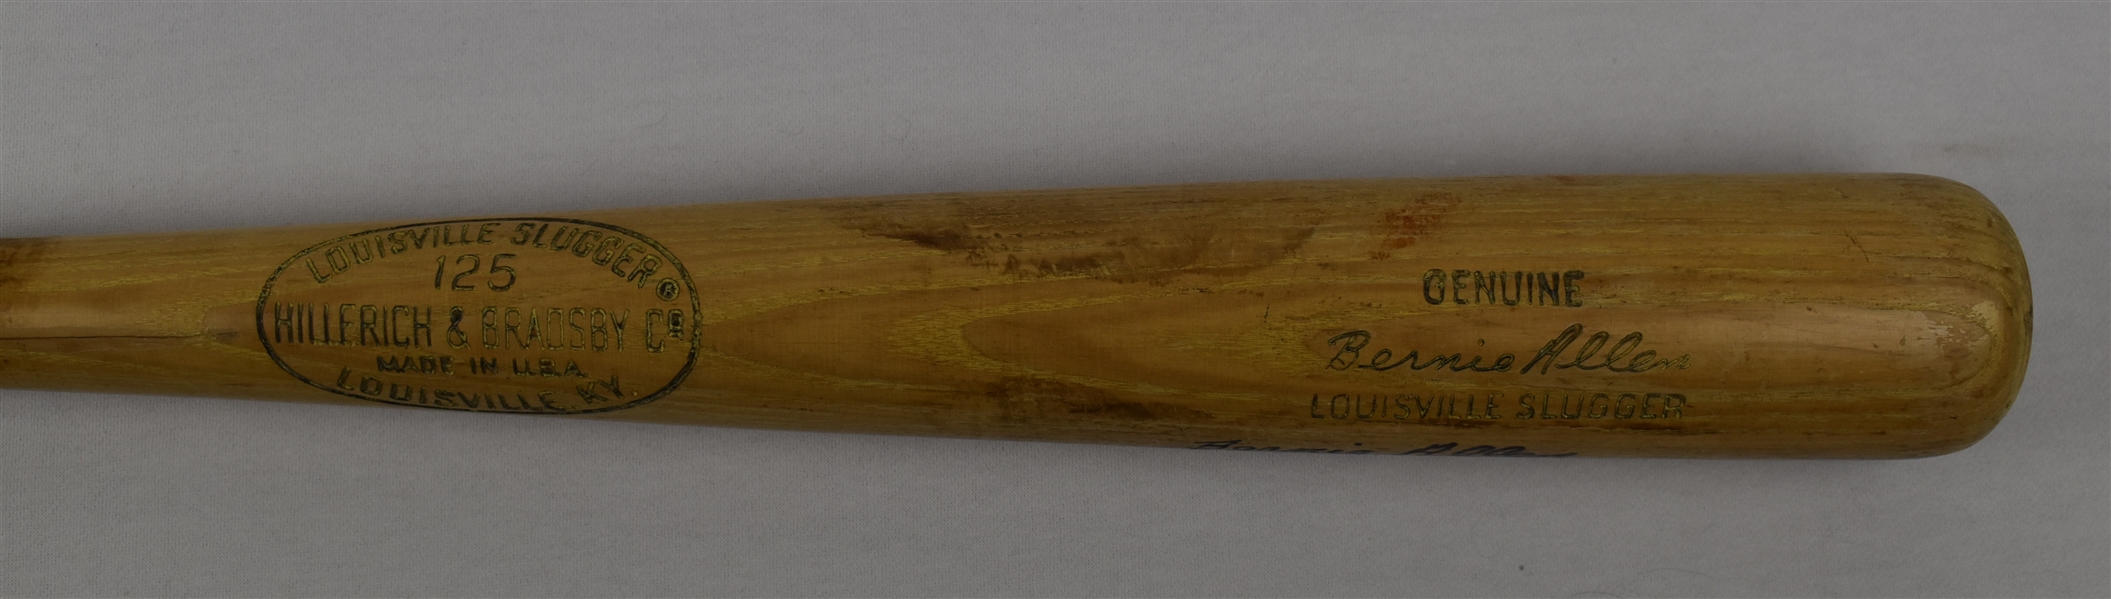 Bernie Allen c. 1967-71 Washington Senators Game Used & Autographed Bat 